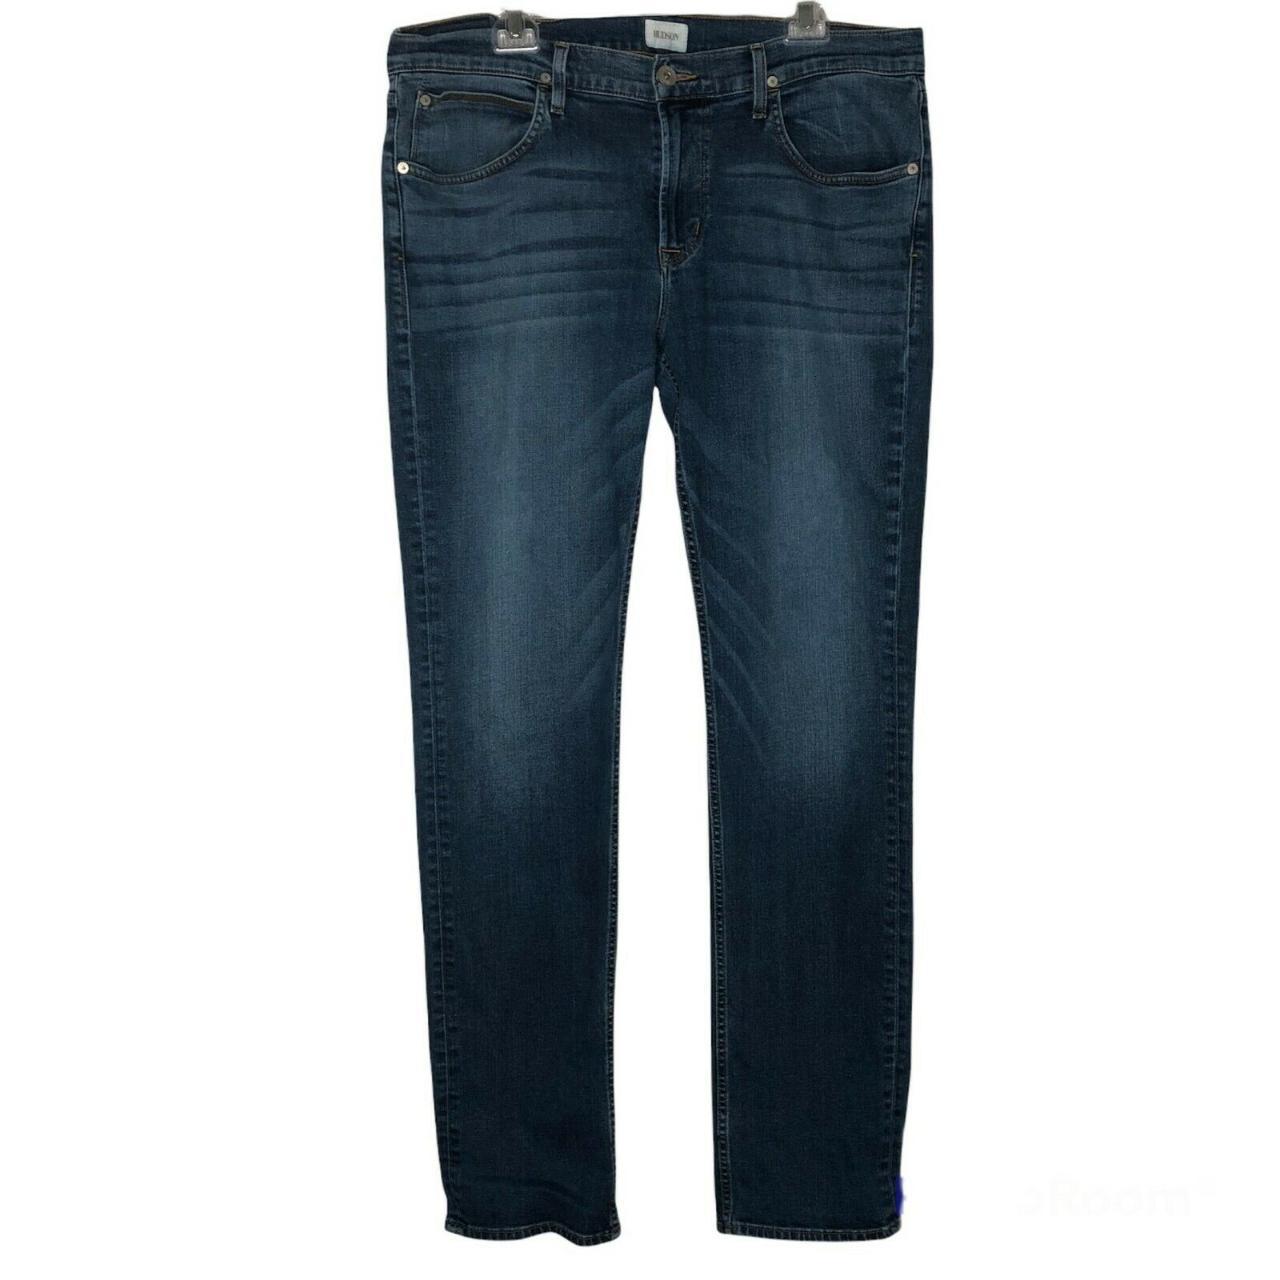 Hudson Jeans Men's Blue Jeans